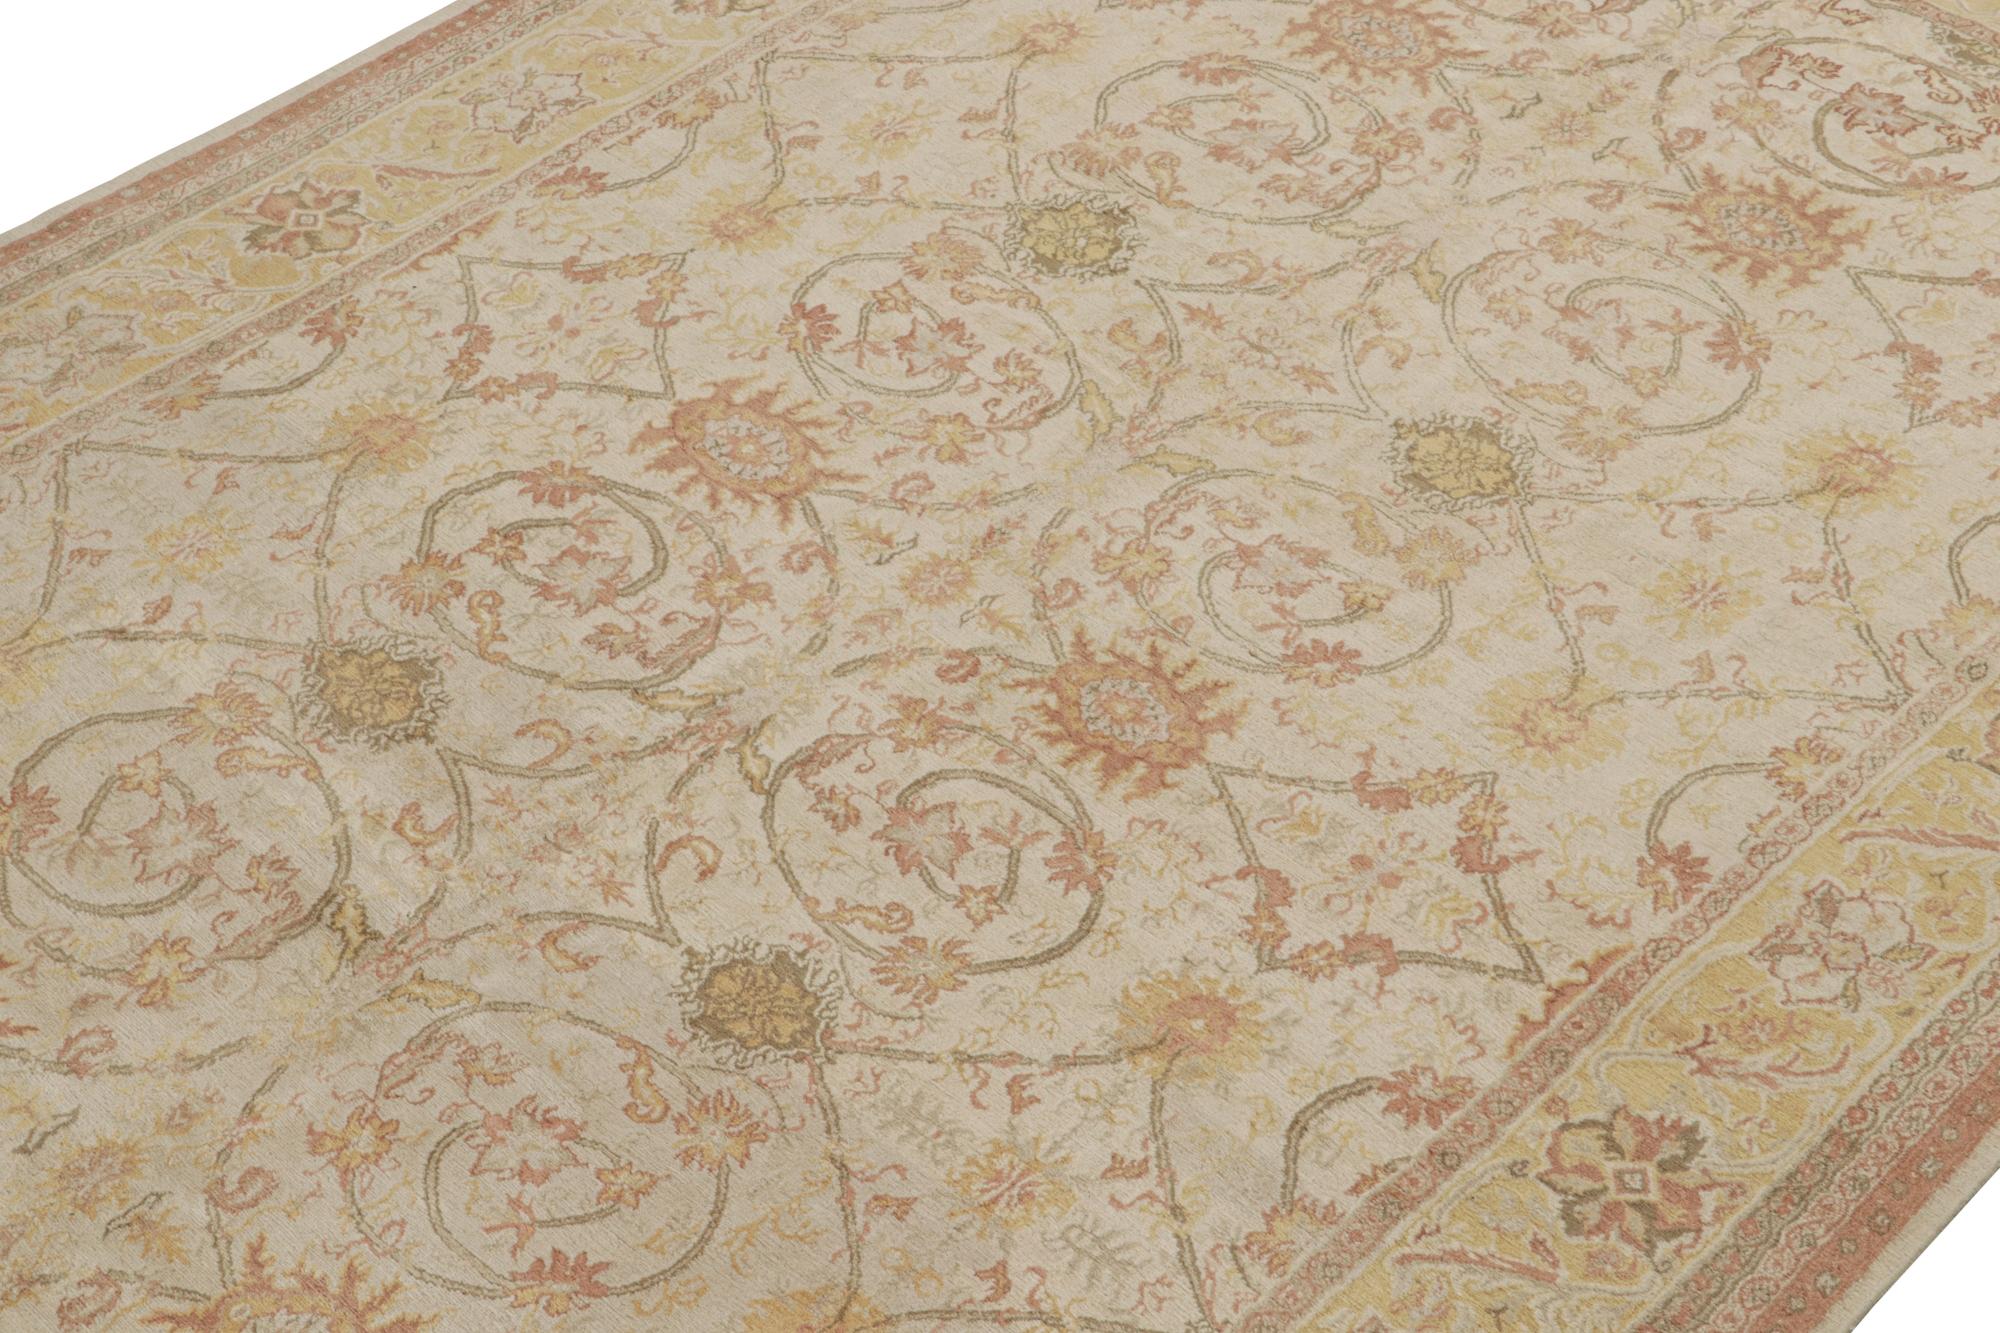 Dieser 9x13 große Teppich ist eine Neuvorstellung aus der Modern Classics Collection'S von Rug & Kilim - ein zeitgenössisches Stück, das von antiken Orientteppichen inspiriert ist.

Weiter zum Design:

Dieser handgeknüpfte Wollteppich ist inspiriert